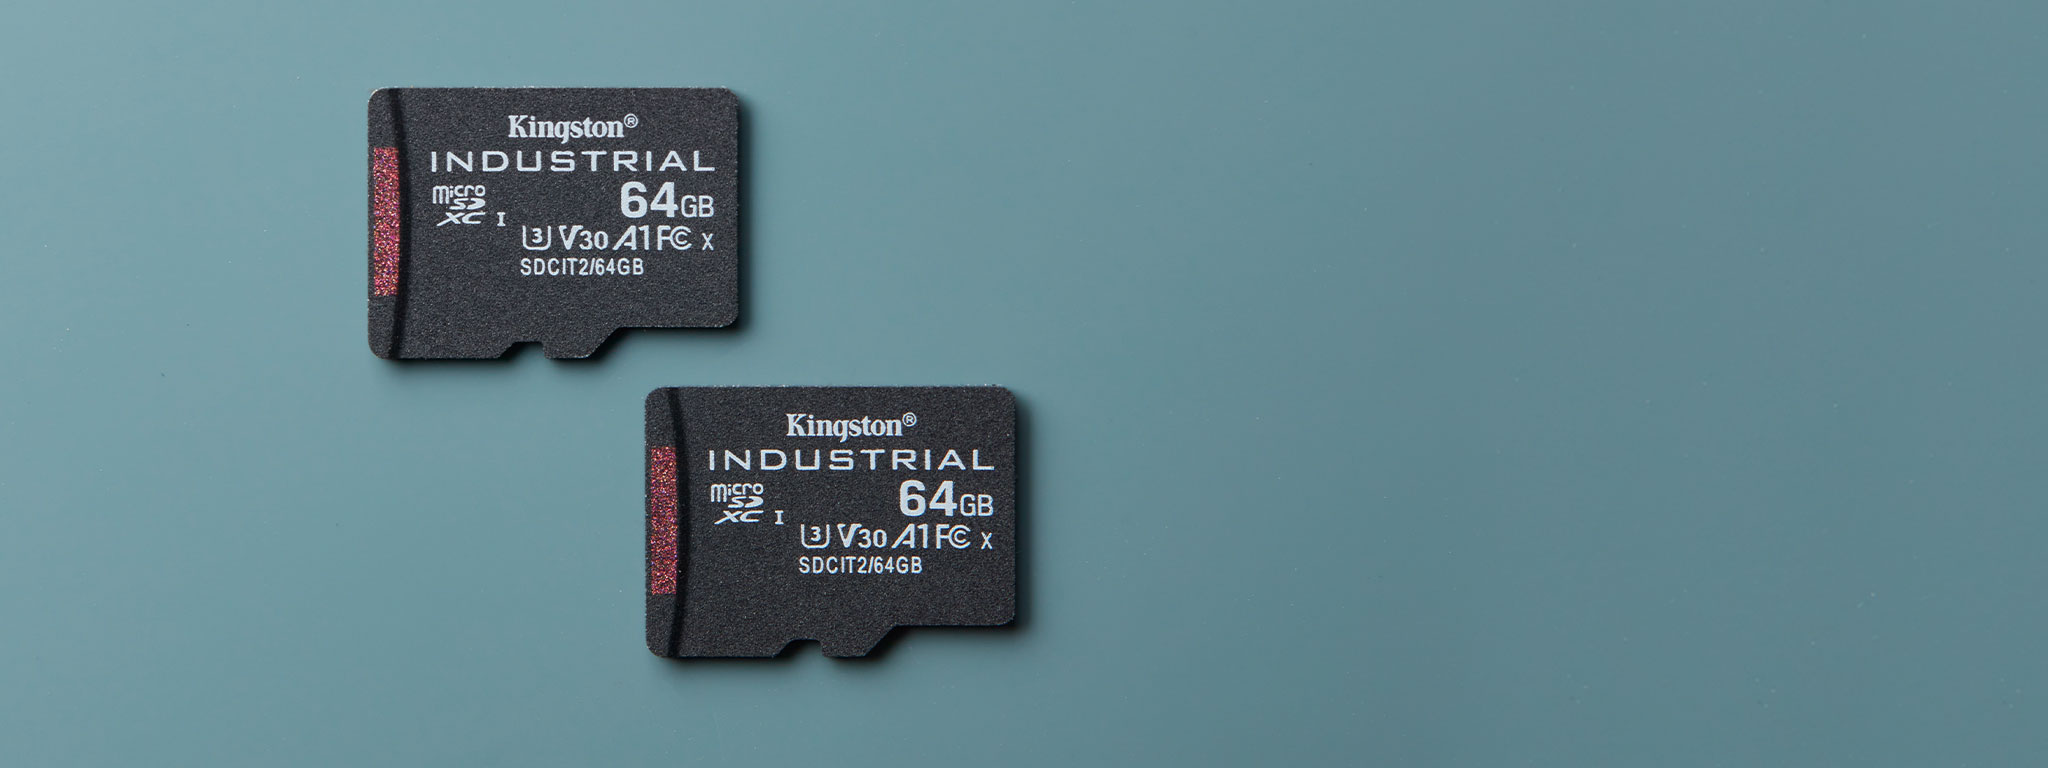 産業用 microSD SDCIT2